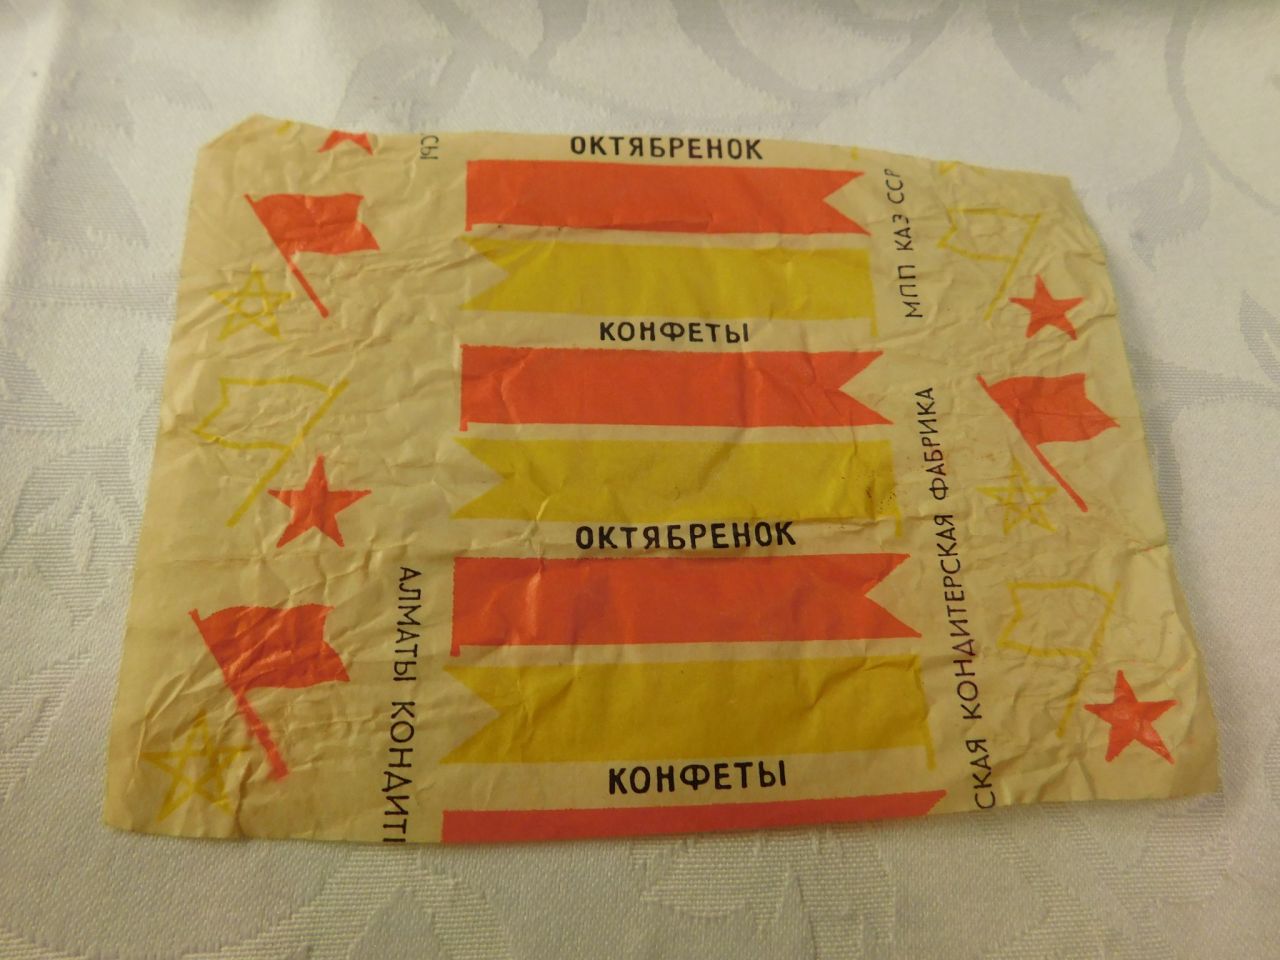 Обертки советских конфет октябрёнок